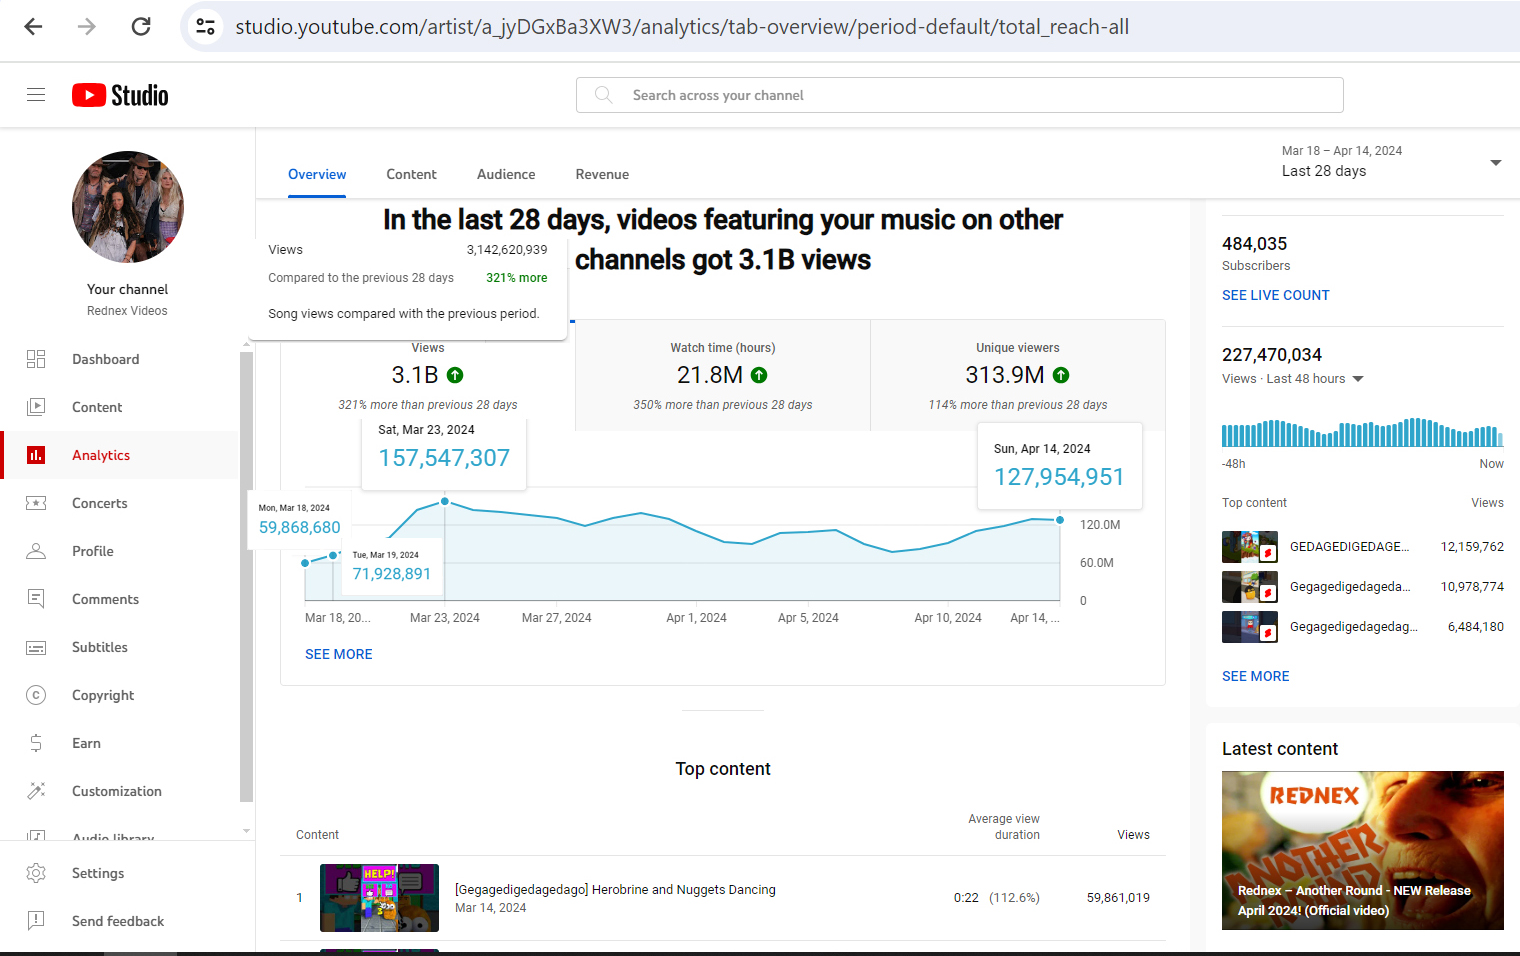 "Cotton Eye Joe" - Weltrekord auf YouTube: Drei Milliarden Aufrufe in 26 Tagen